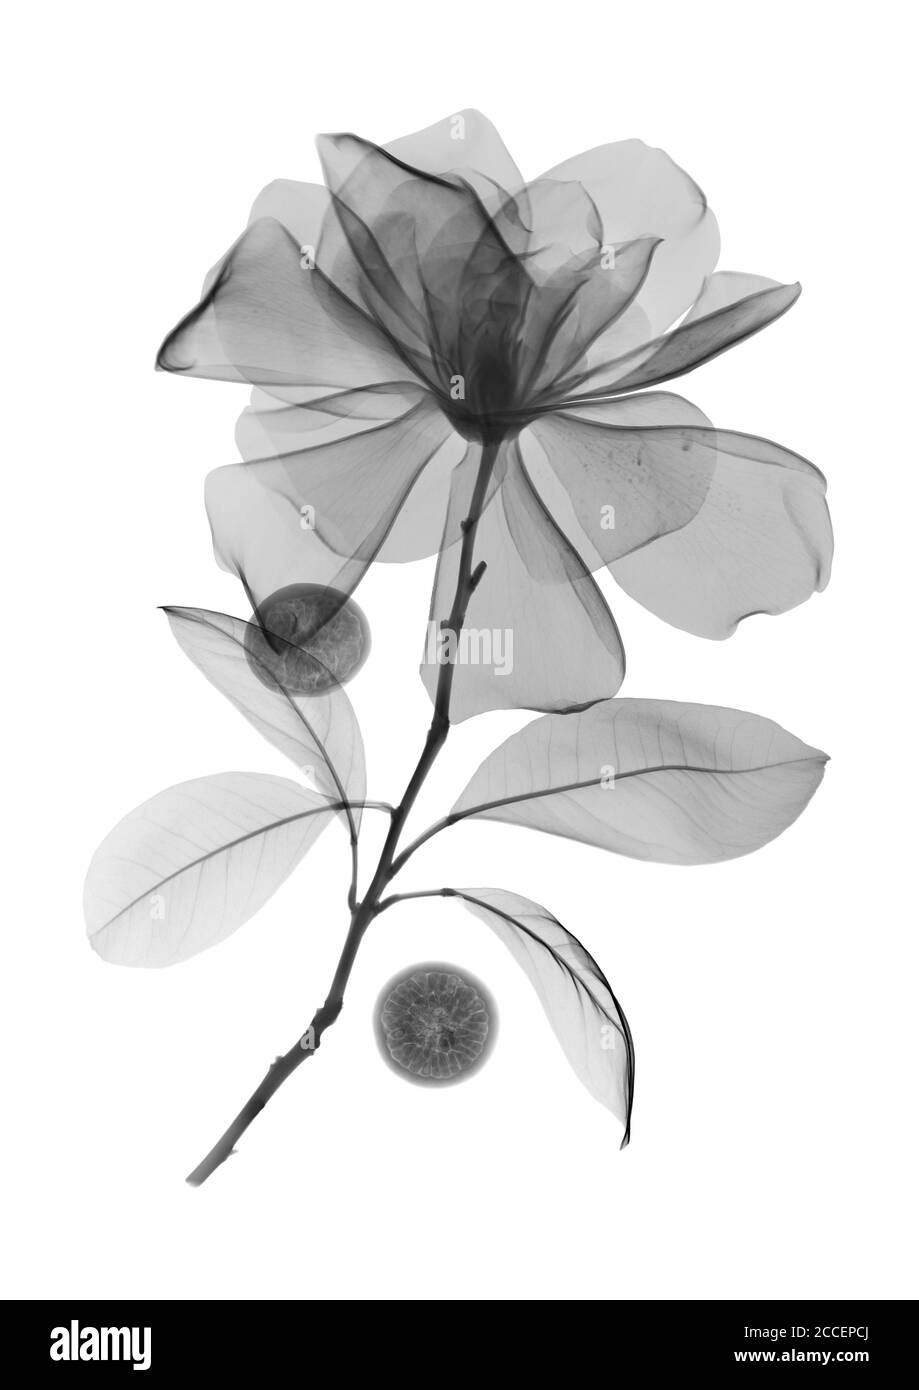 Flores de Magnolia y bayas de acai, rayos X. Foto de stock